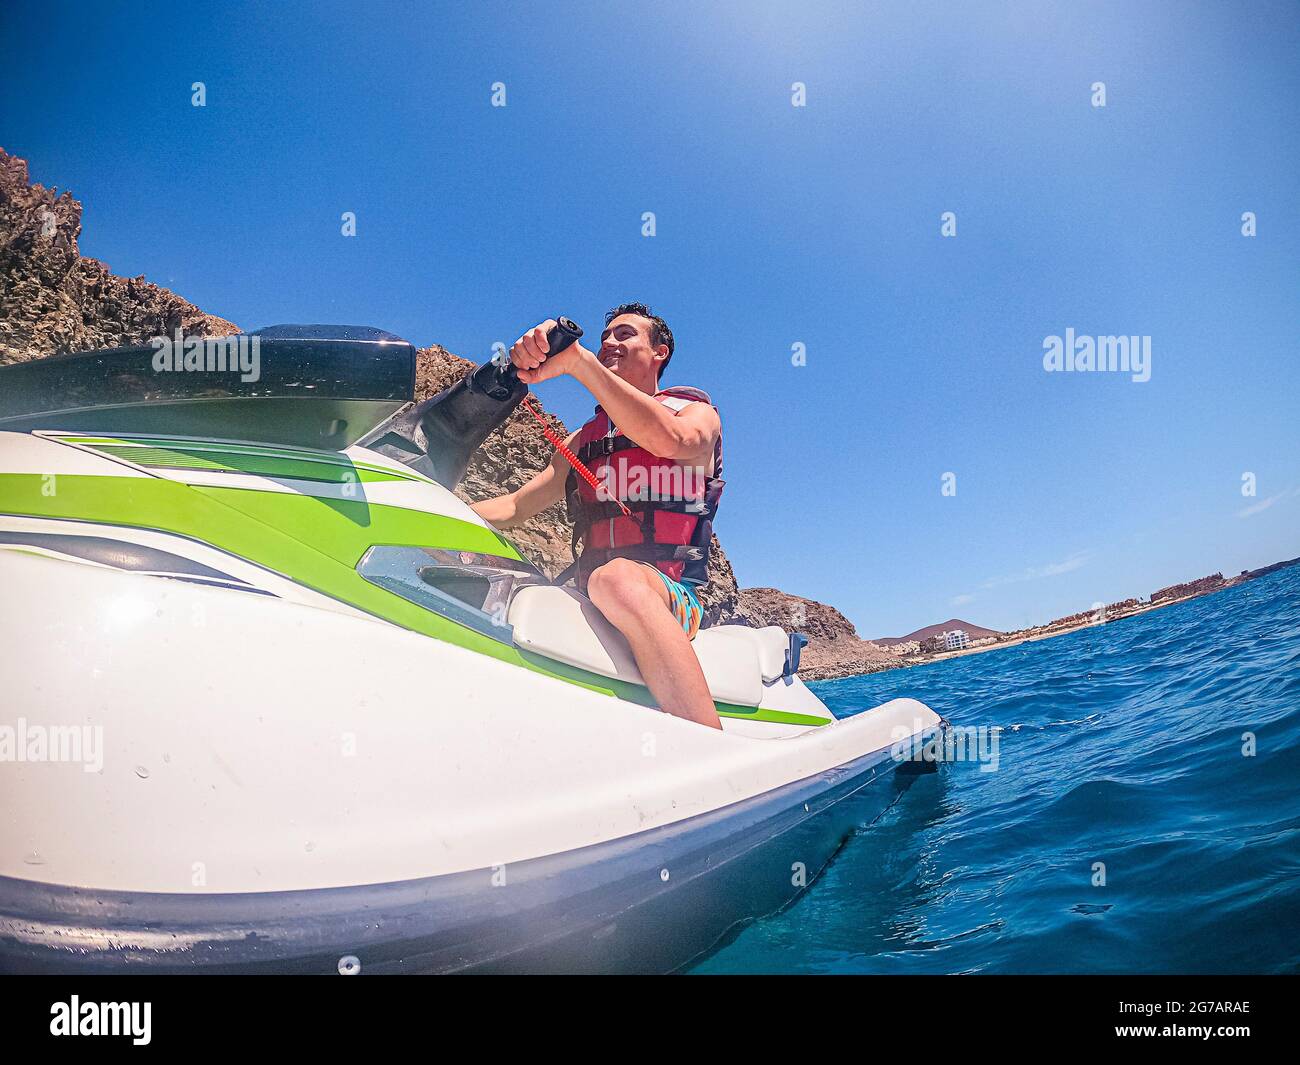 Junger Mann genießen Jet-Ski-Tour Ausflug Aktivität Wassersport und Lächeln - Menschen Touristen haben Spaß - Blue Ocean aktiv männlich im Sommerurlaub Urlaub Stockfoto